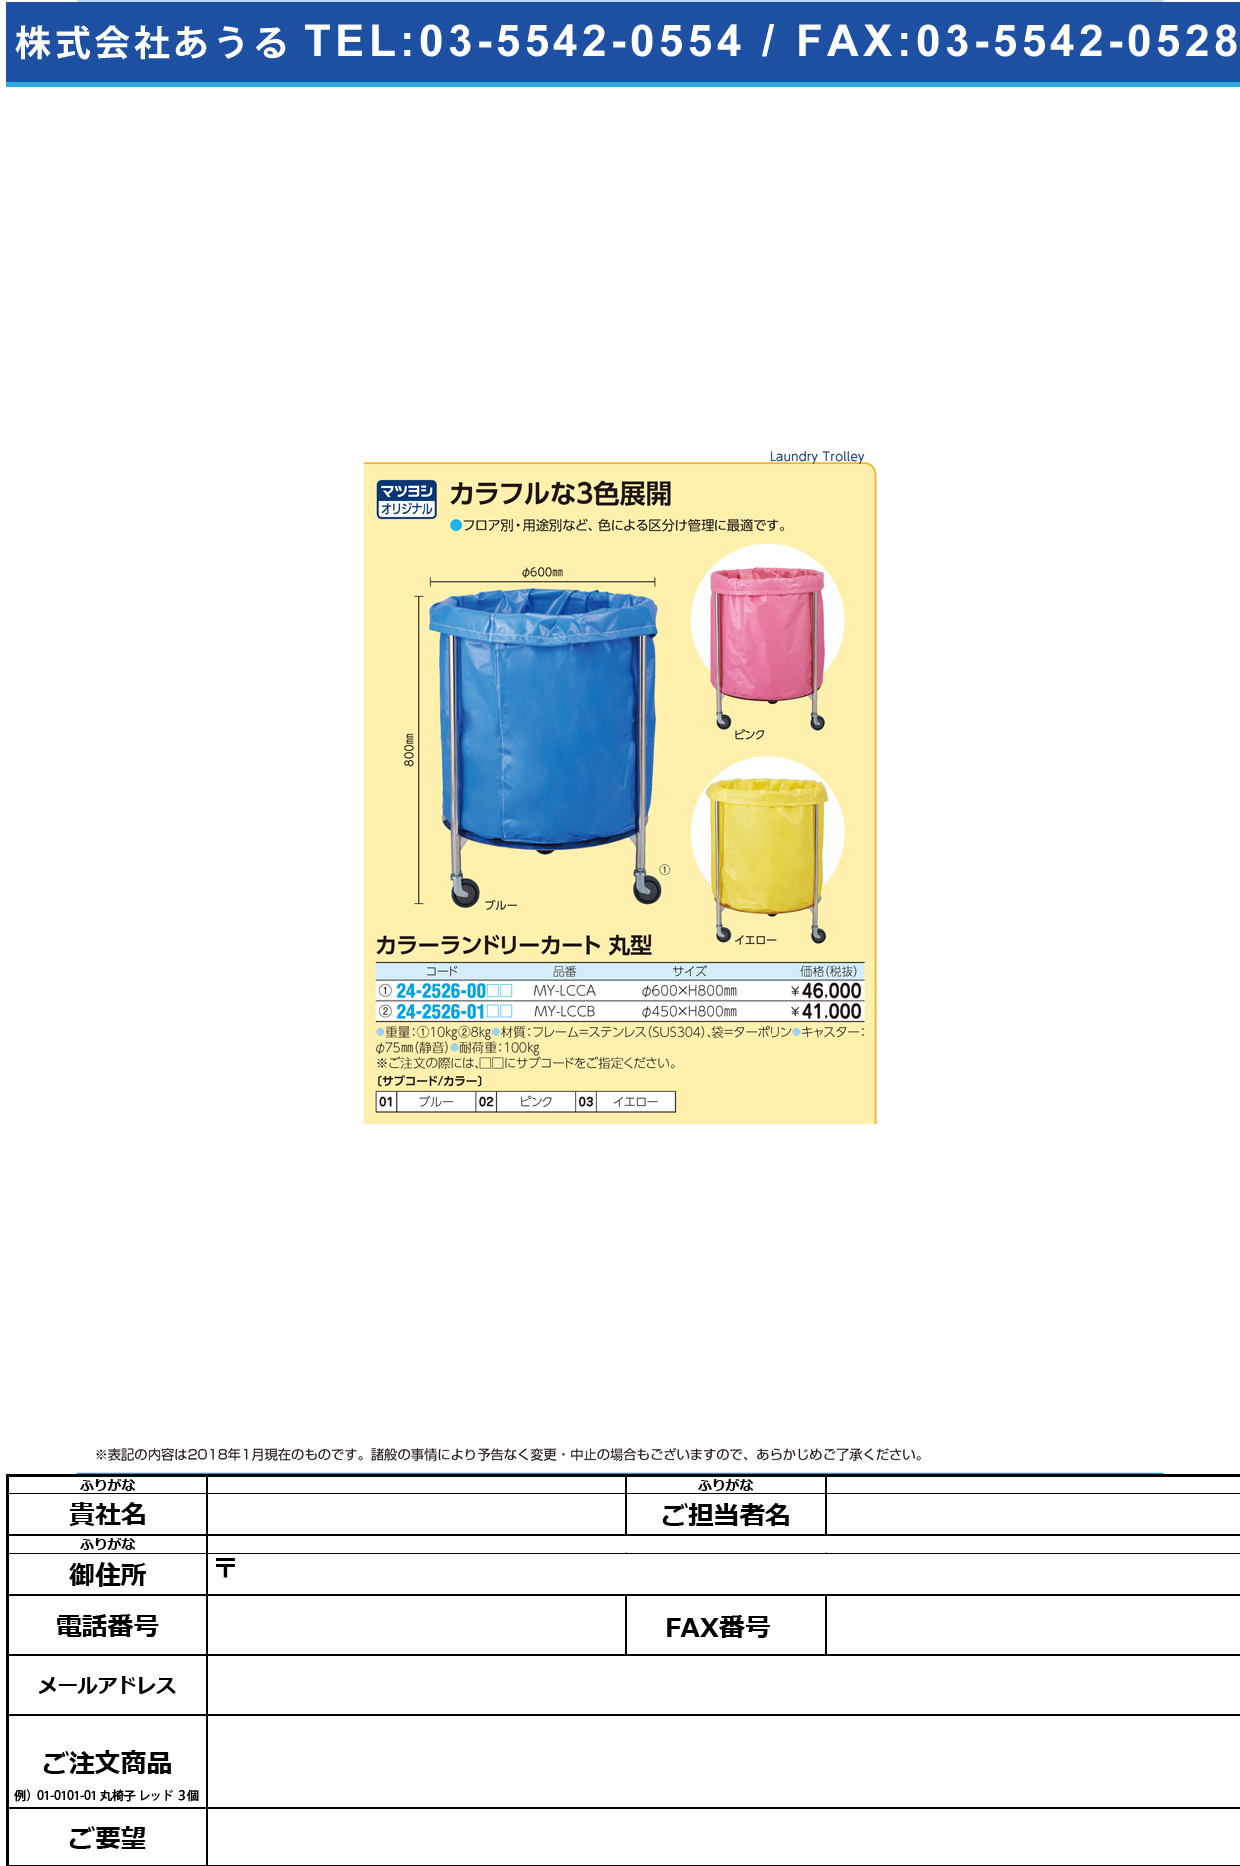 (24-2526-01)カラーランドリーカート（丸型） MY-LCCB(450X800MM) ｶﾗｰﾗﾝﾄﾞﾘｰｶｰﾄﾏﾙｶﾞﾀ ピンク【1台単位】【2019年カタログ商品】